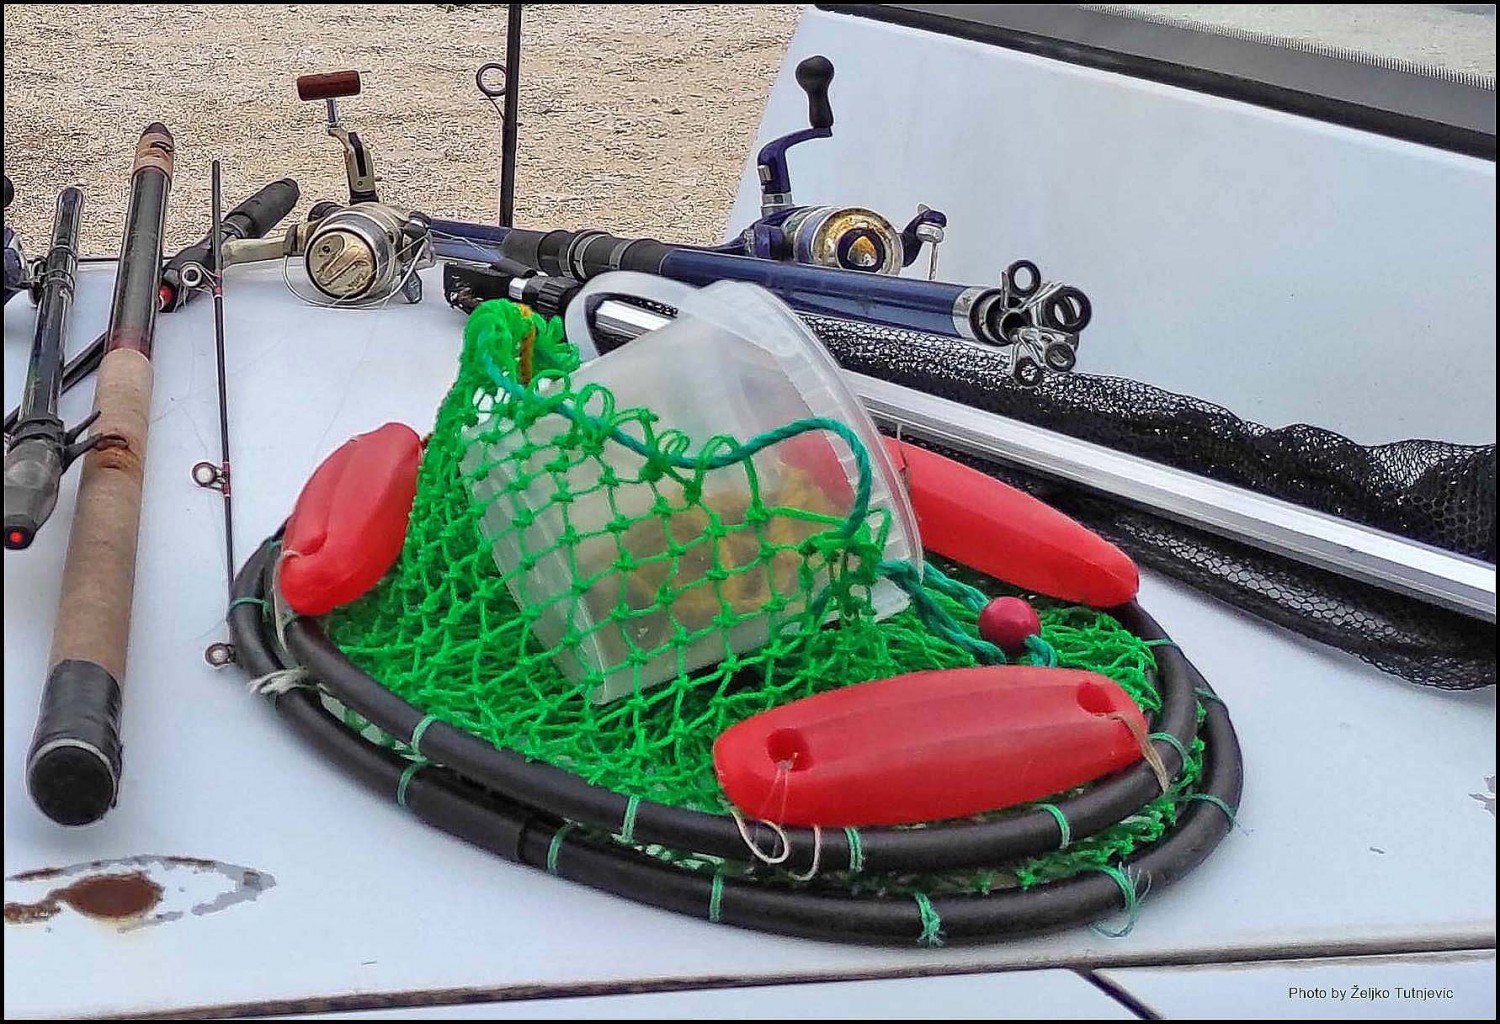 Na dubrovačkoj plaži izgubljena je mrežica za ribu, nalazniku nagrada (FOTO)